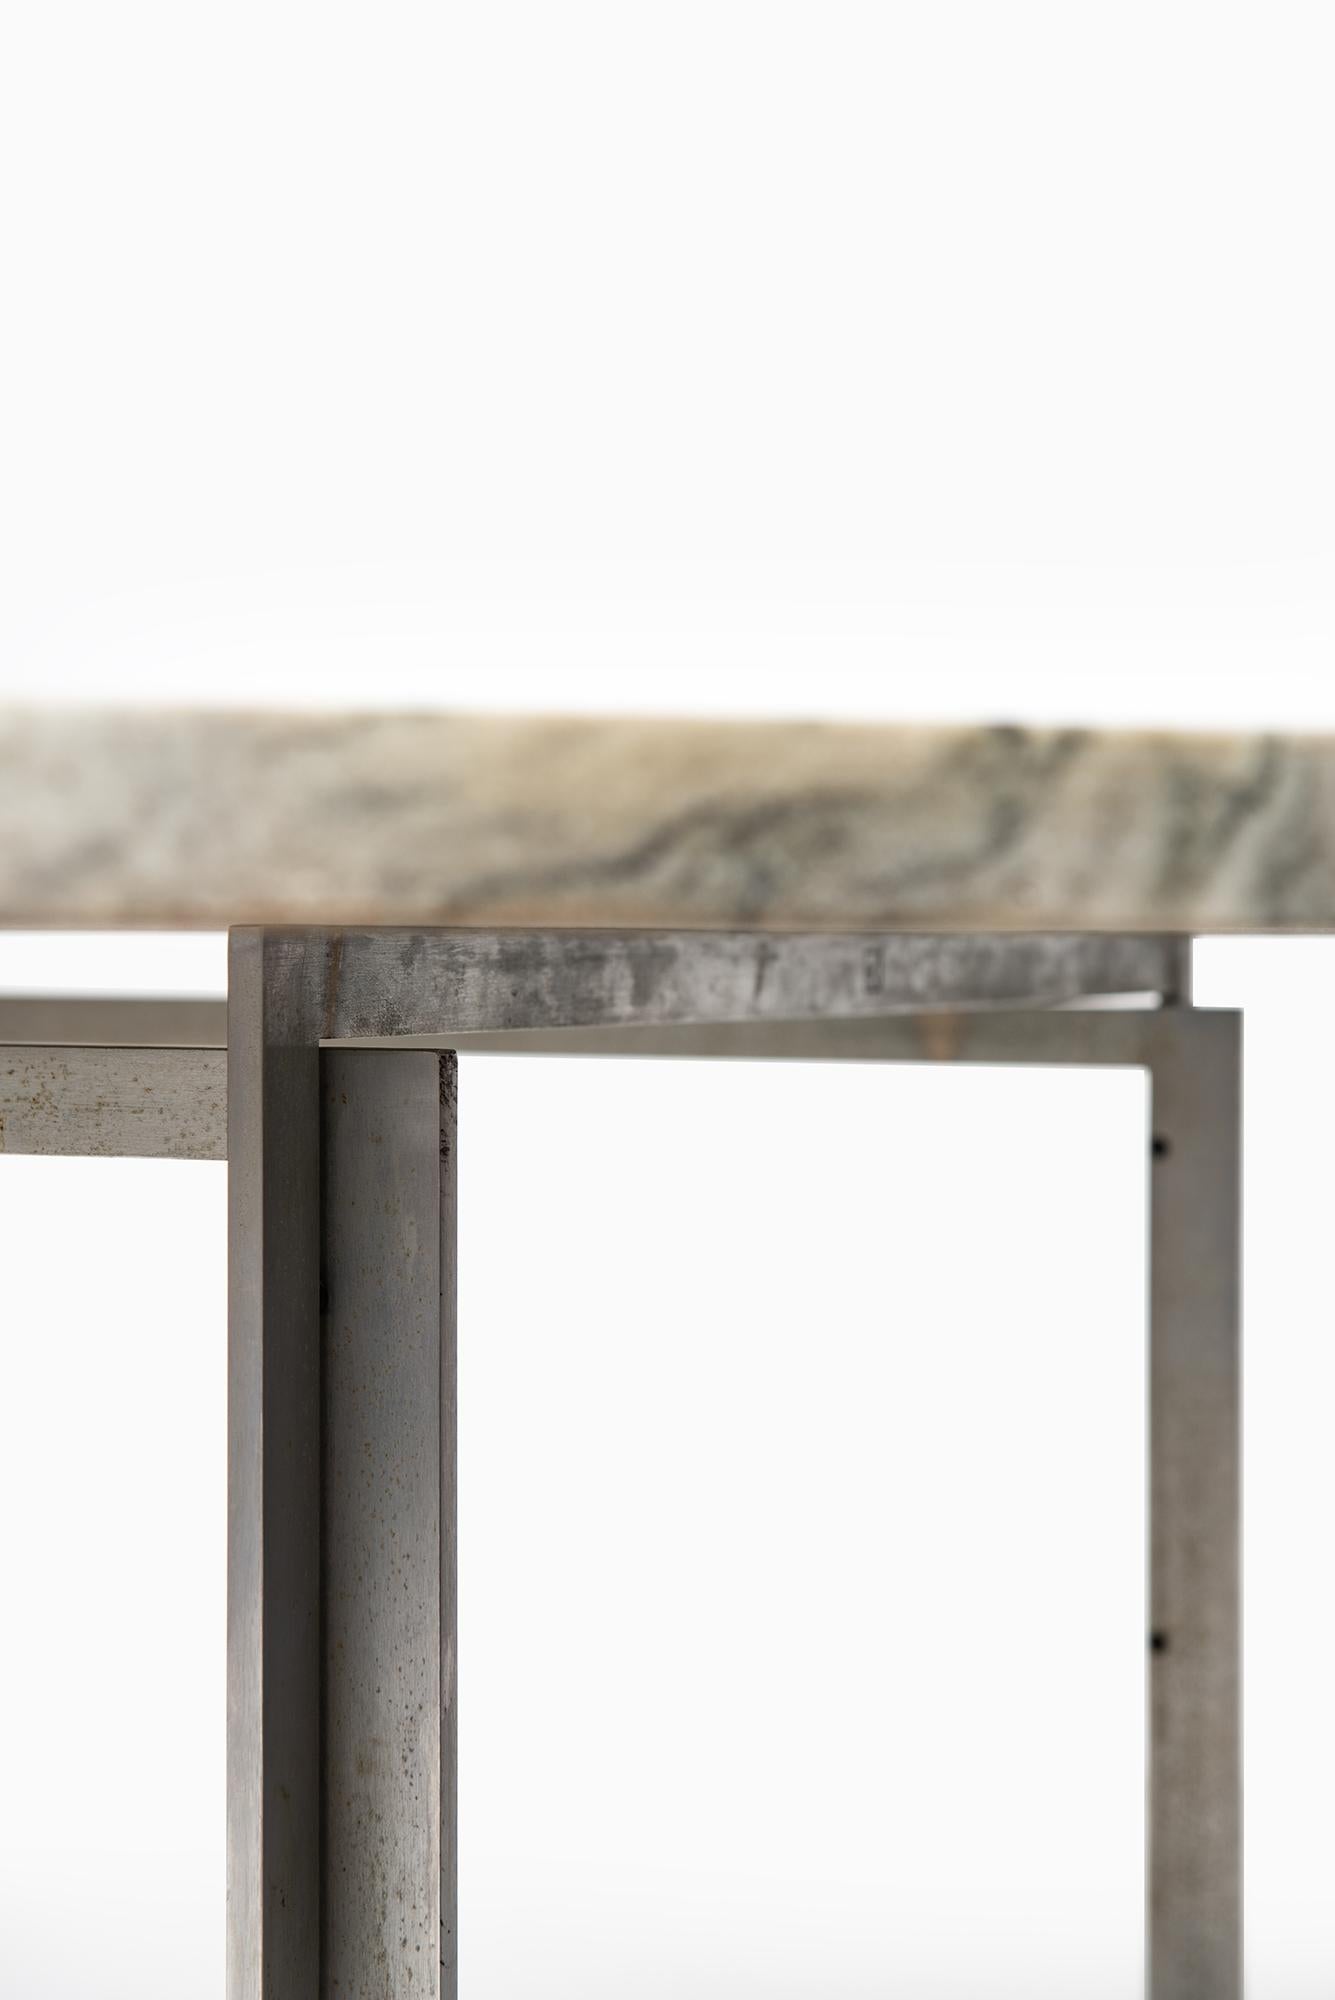 Marble Poul Kjaerholm PK-54 Dining Table by E. Kold Christensen in Denmark For Sale